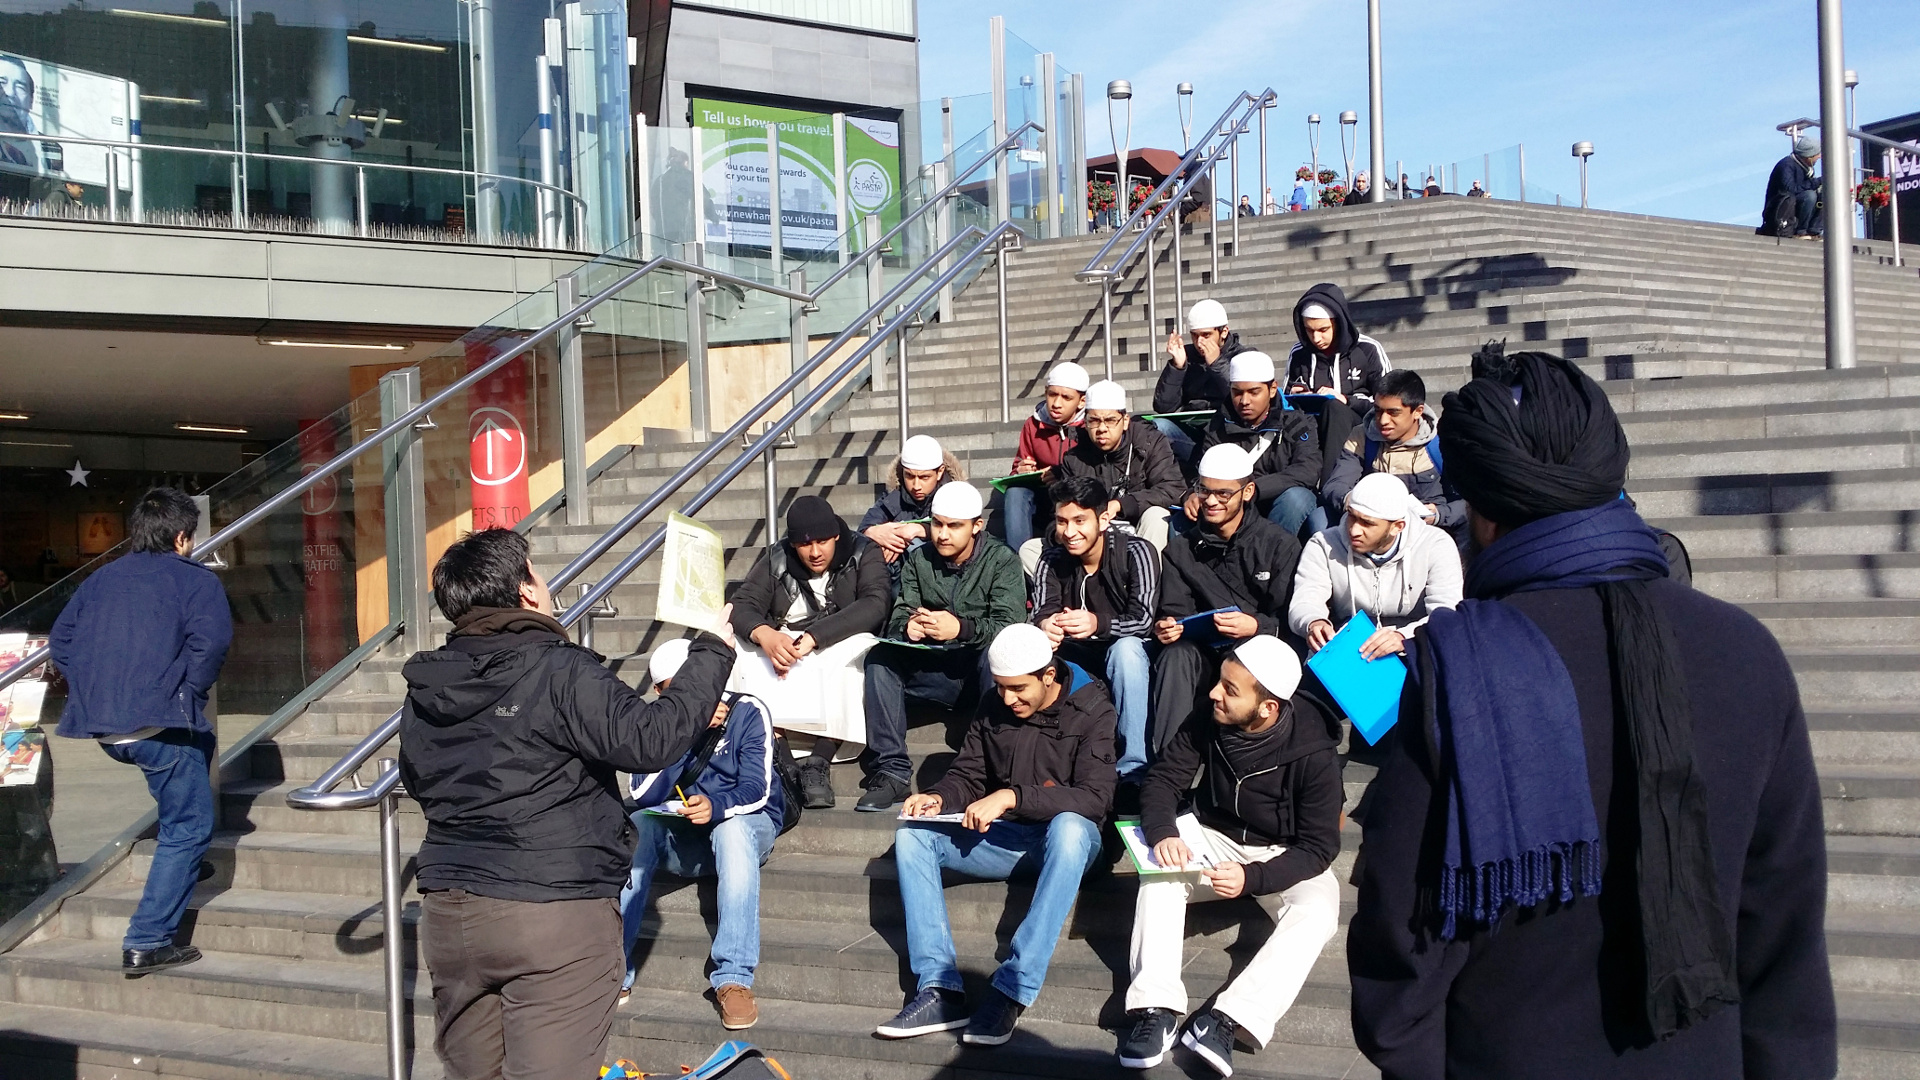 Darul Hadis Latifiah – Darul Hadis Latifiah is an Islamic school based in Bethnal Green, London